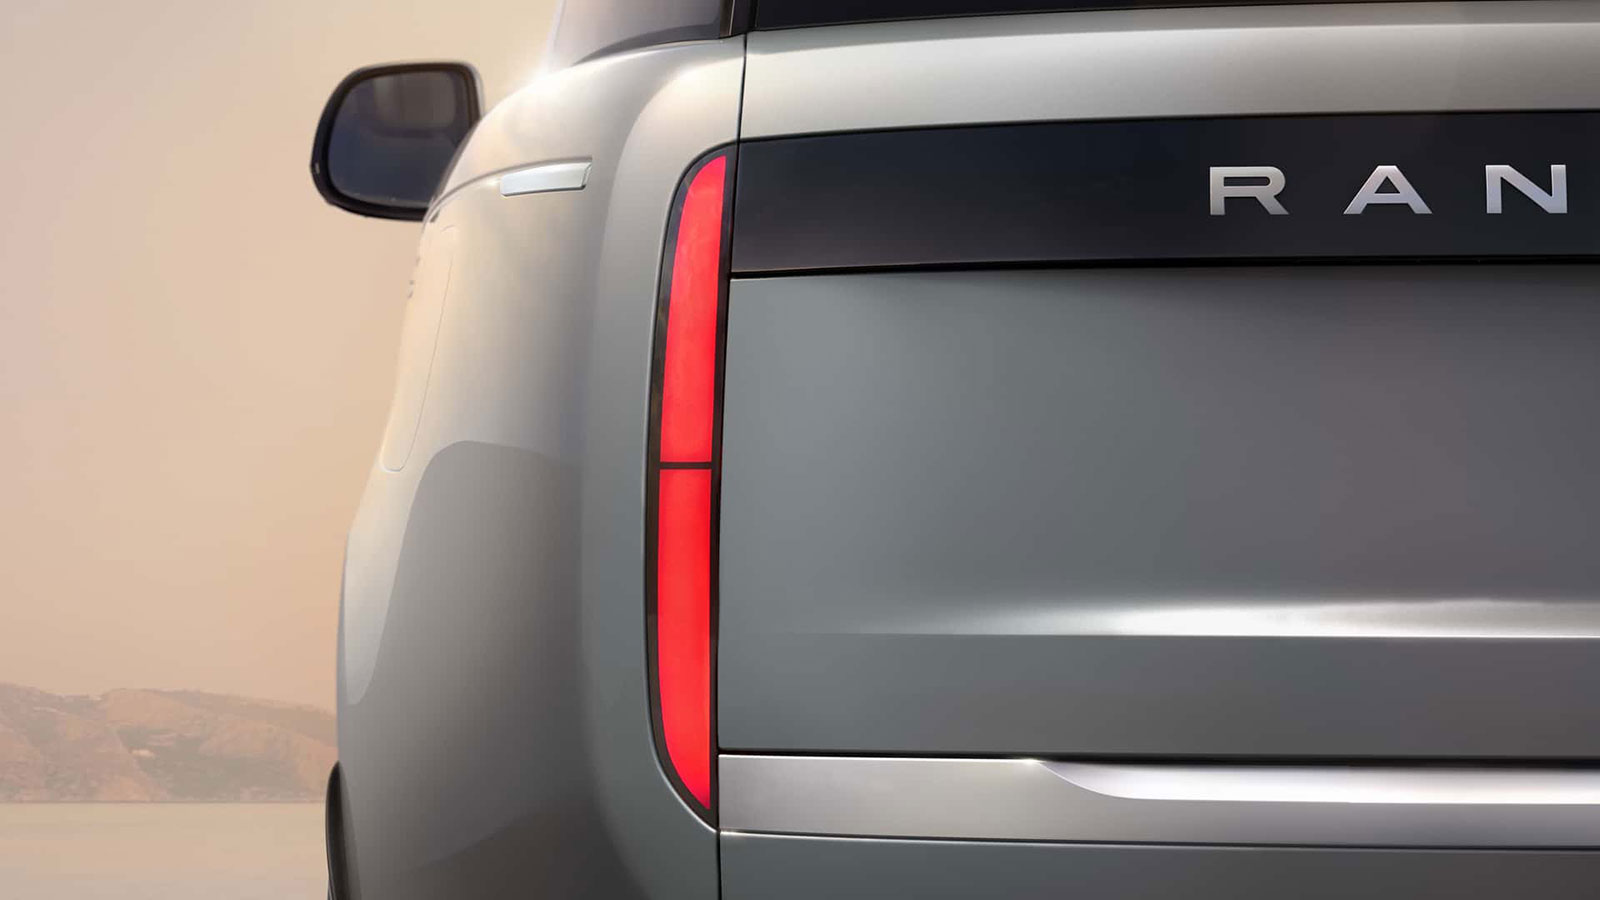 Πρώτο teaser του ηλεκτρικού Range Rover